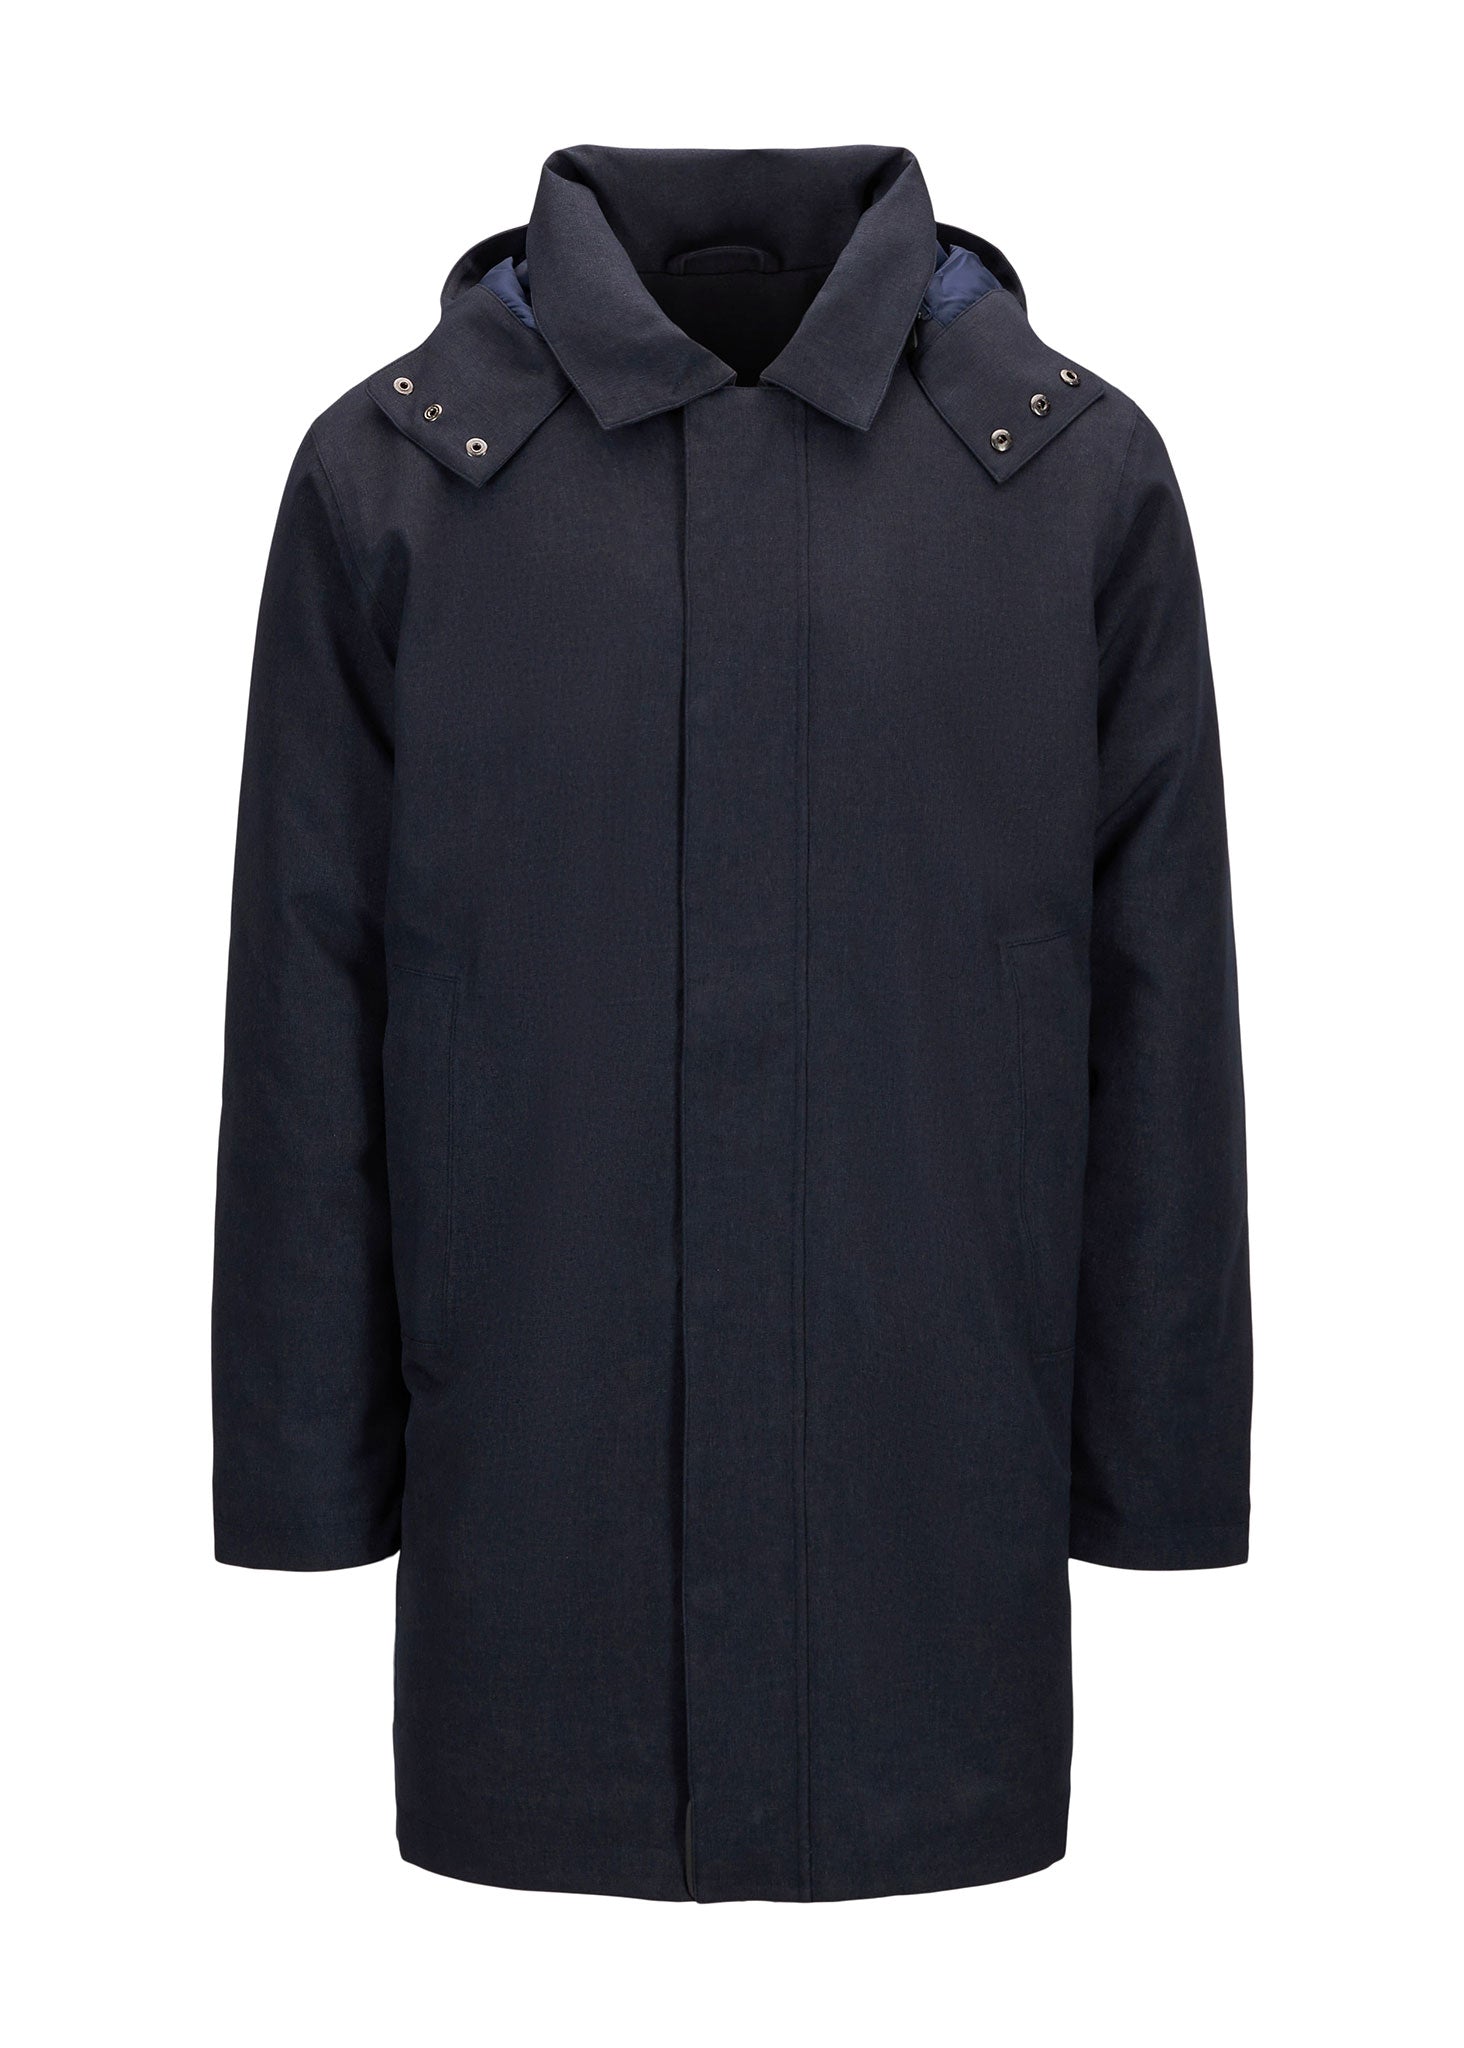 BRGN by Lunde & Gaundal Vestavind Coat Coats 795 Dark Navy